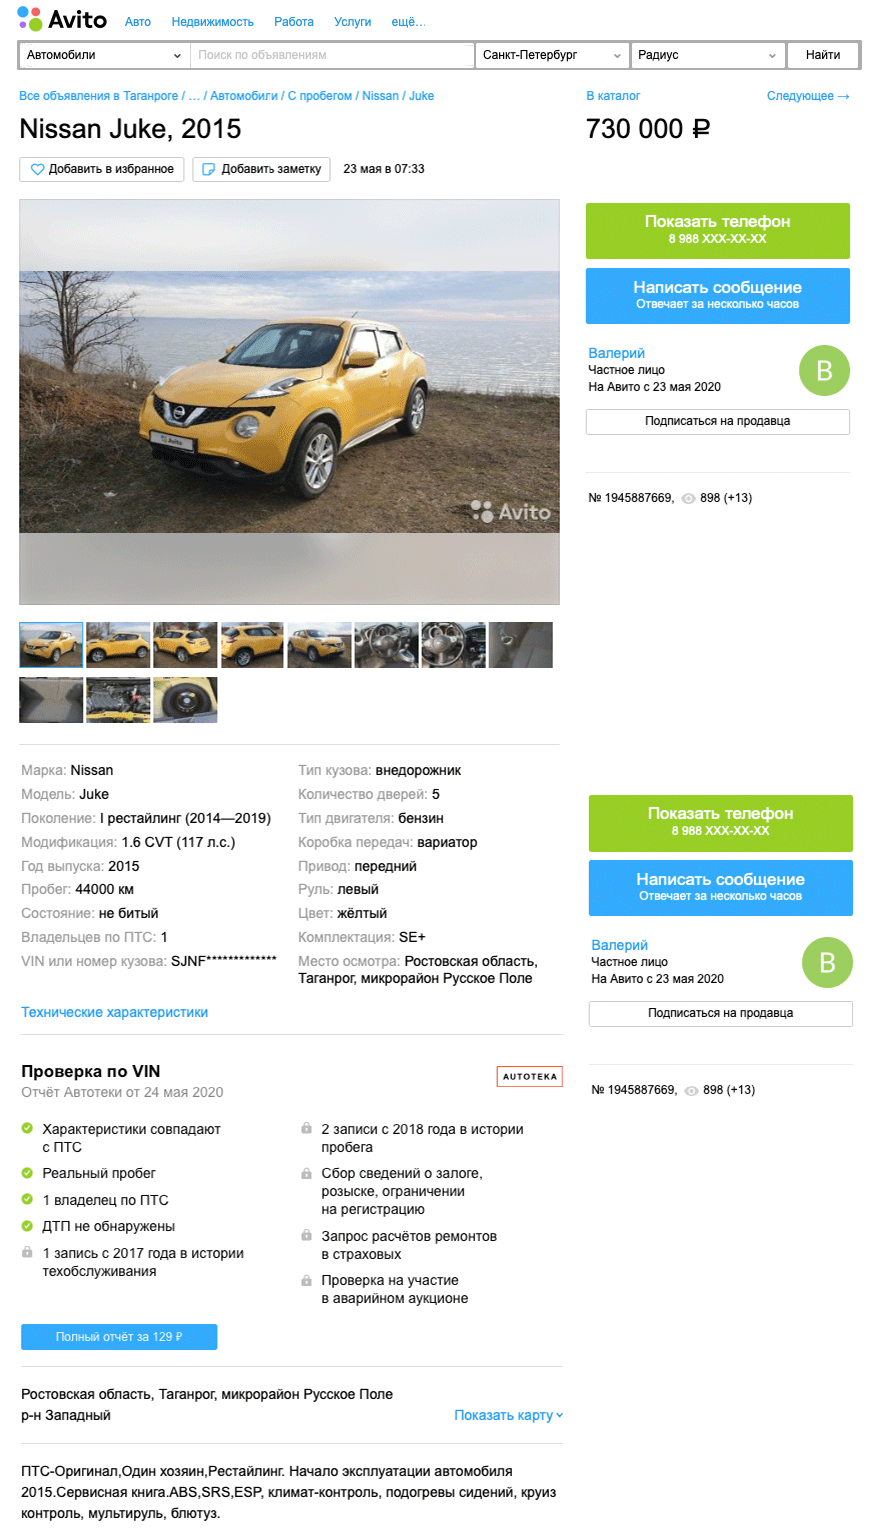 Nissan Juke (2013-2014) - фото, цена, характеристики, отзывы Ниссан Жук / Джук в России